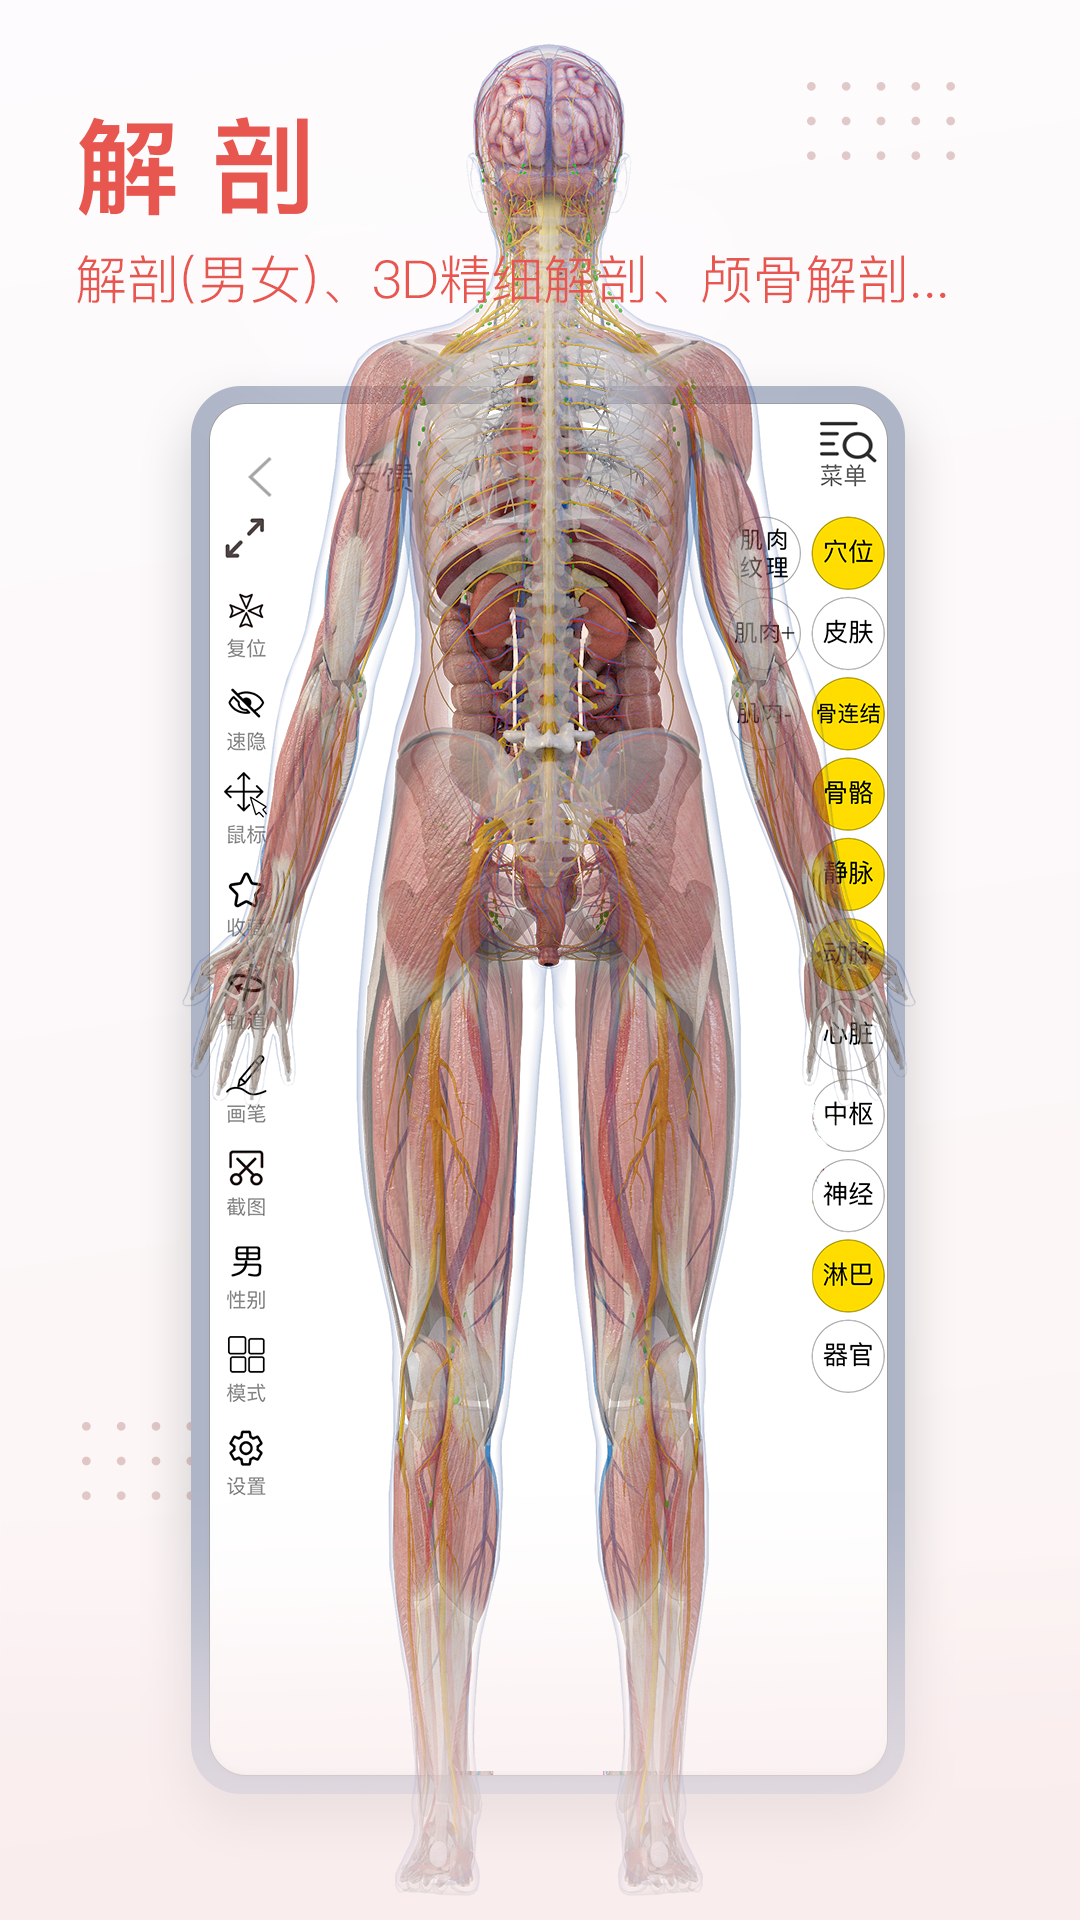 3DBody解剖截图